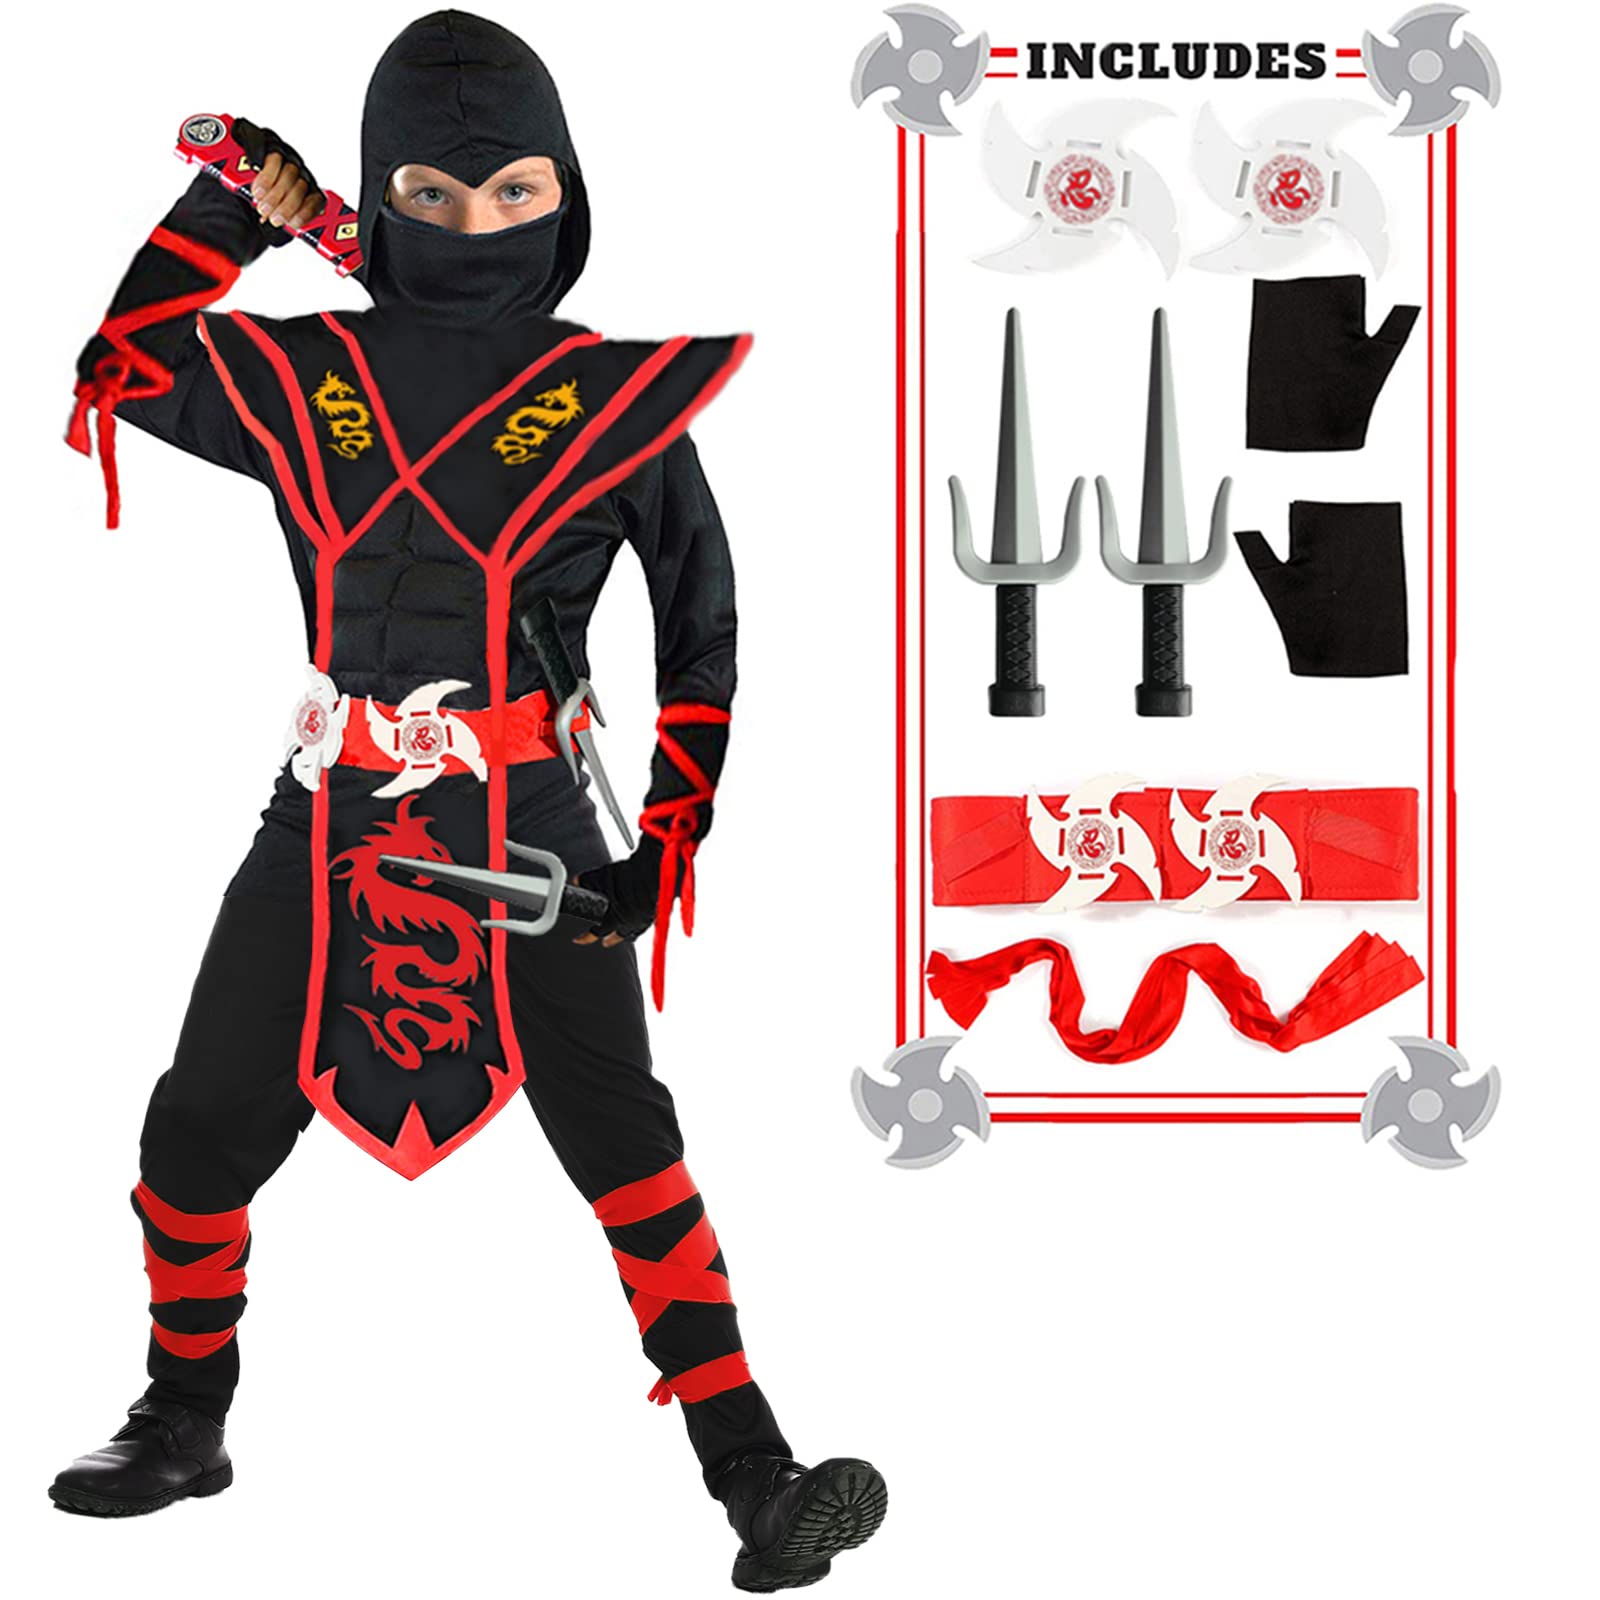 SATKULL Ninja Deluxe Costume Set for Kids Muscle Ninja Costume with Ninja Foam Accessories -14 Pieces